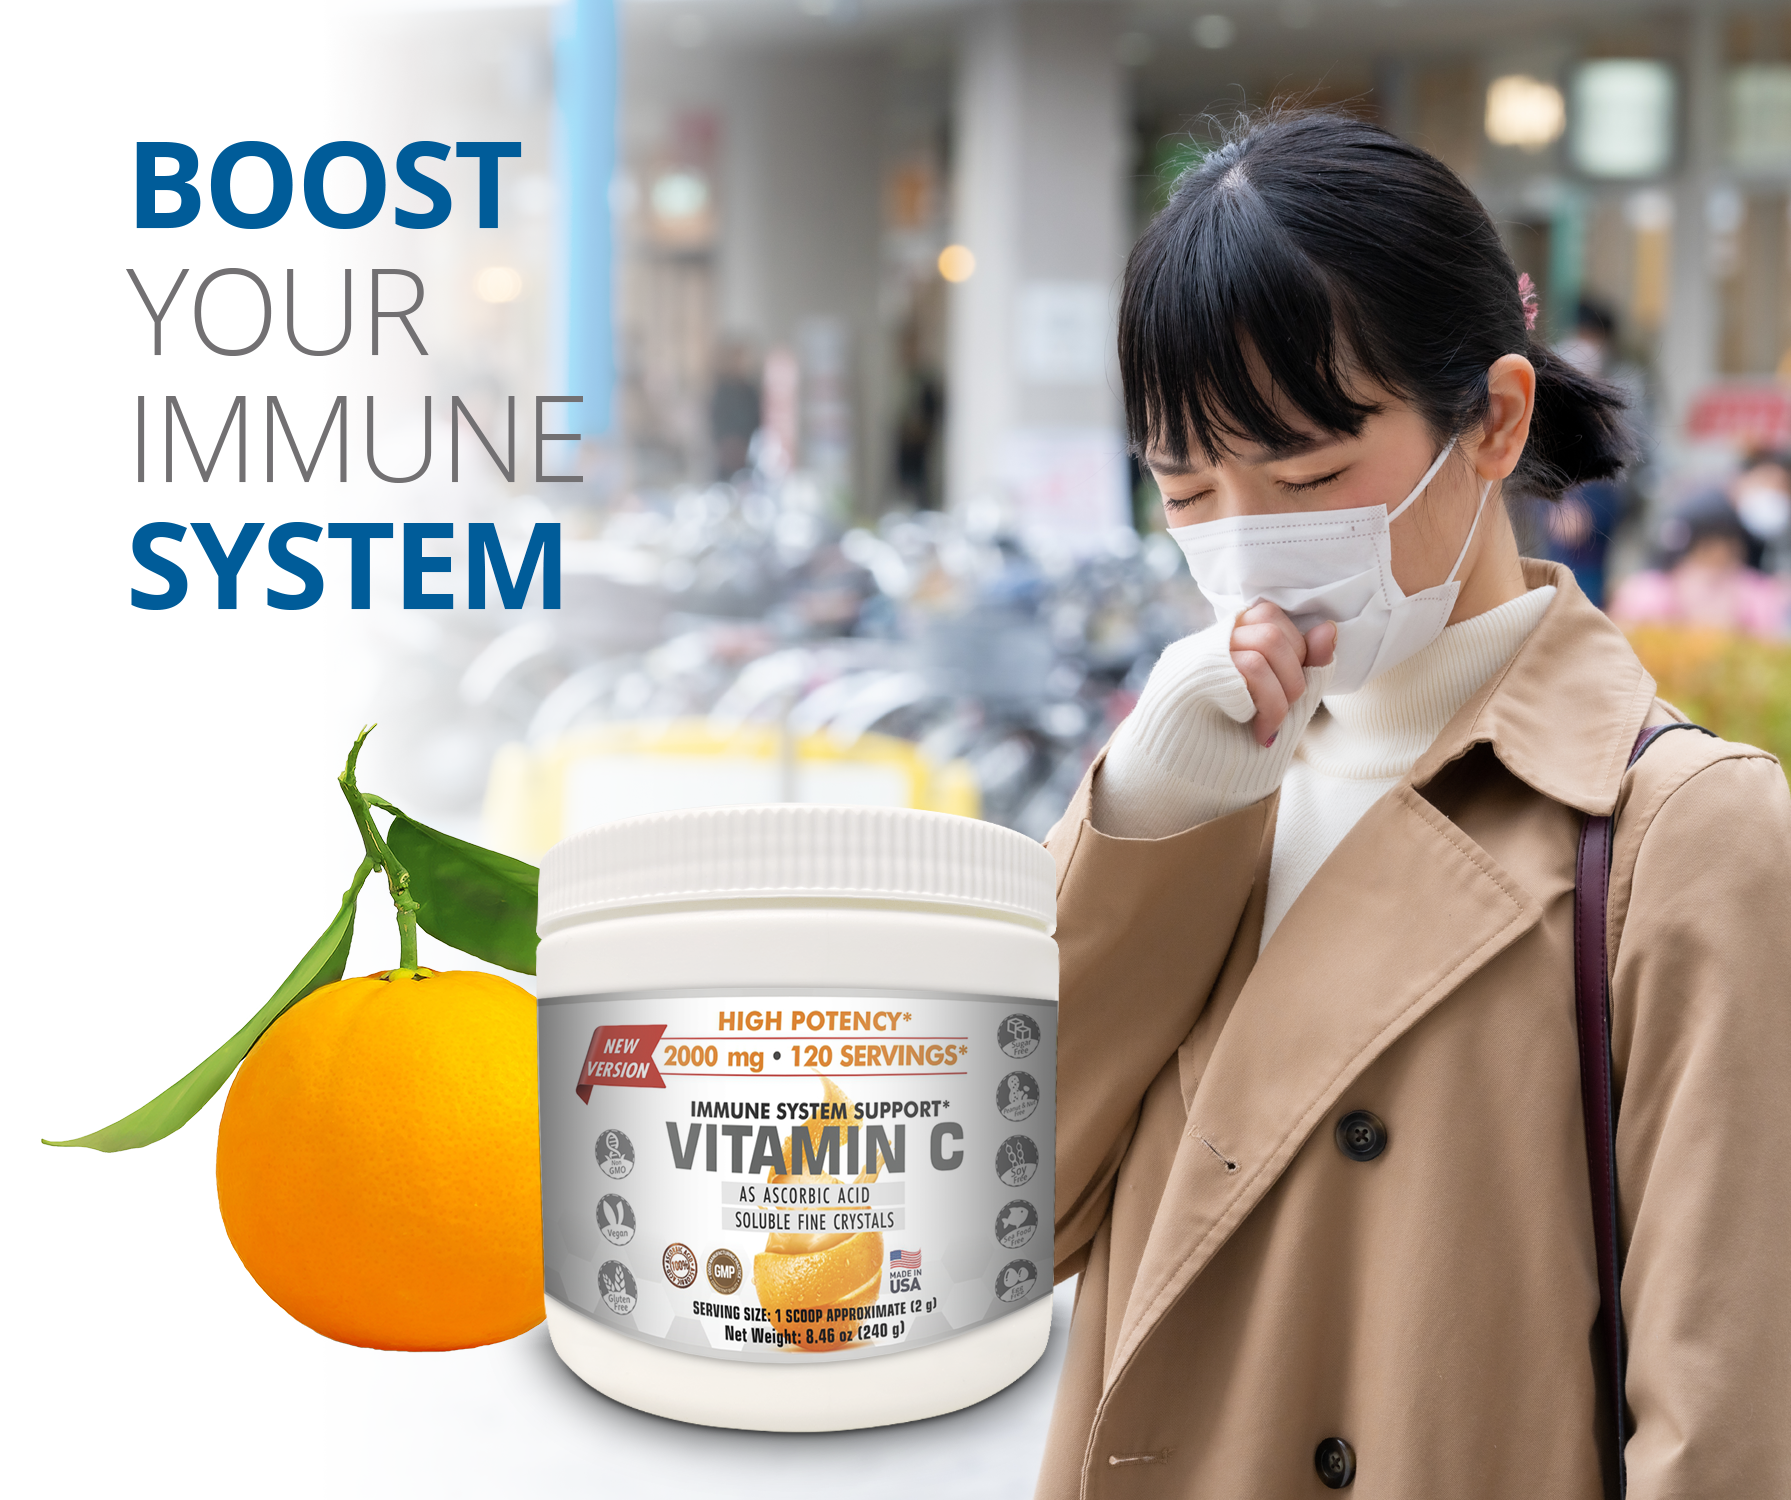 Vitamin C Supplement Usage